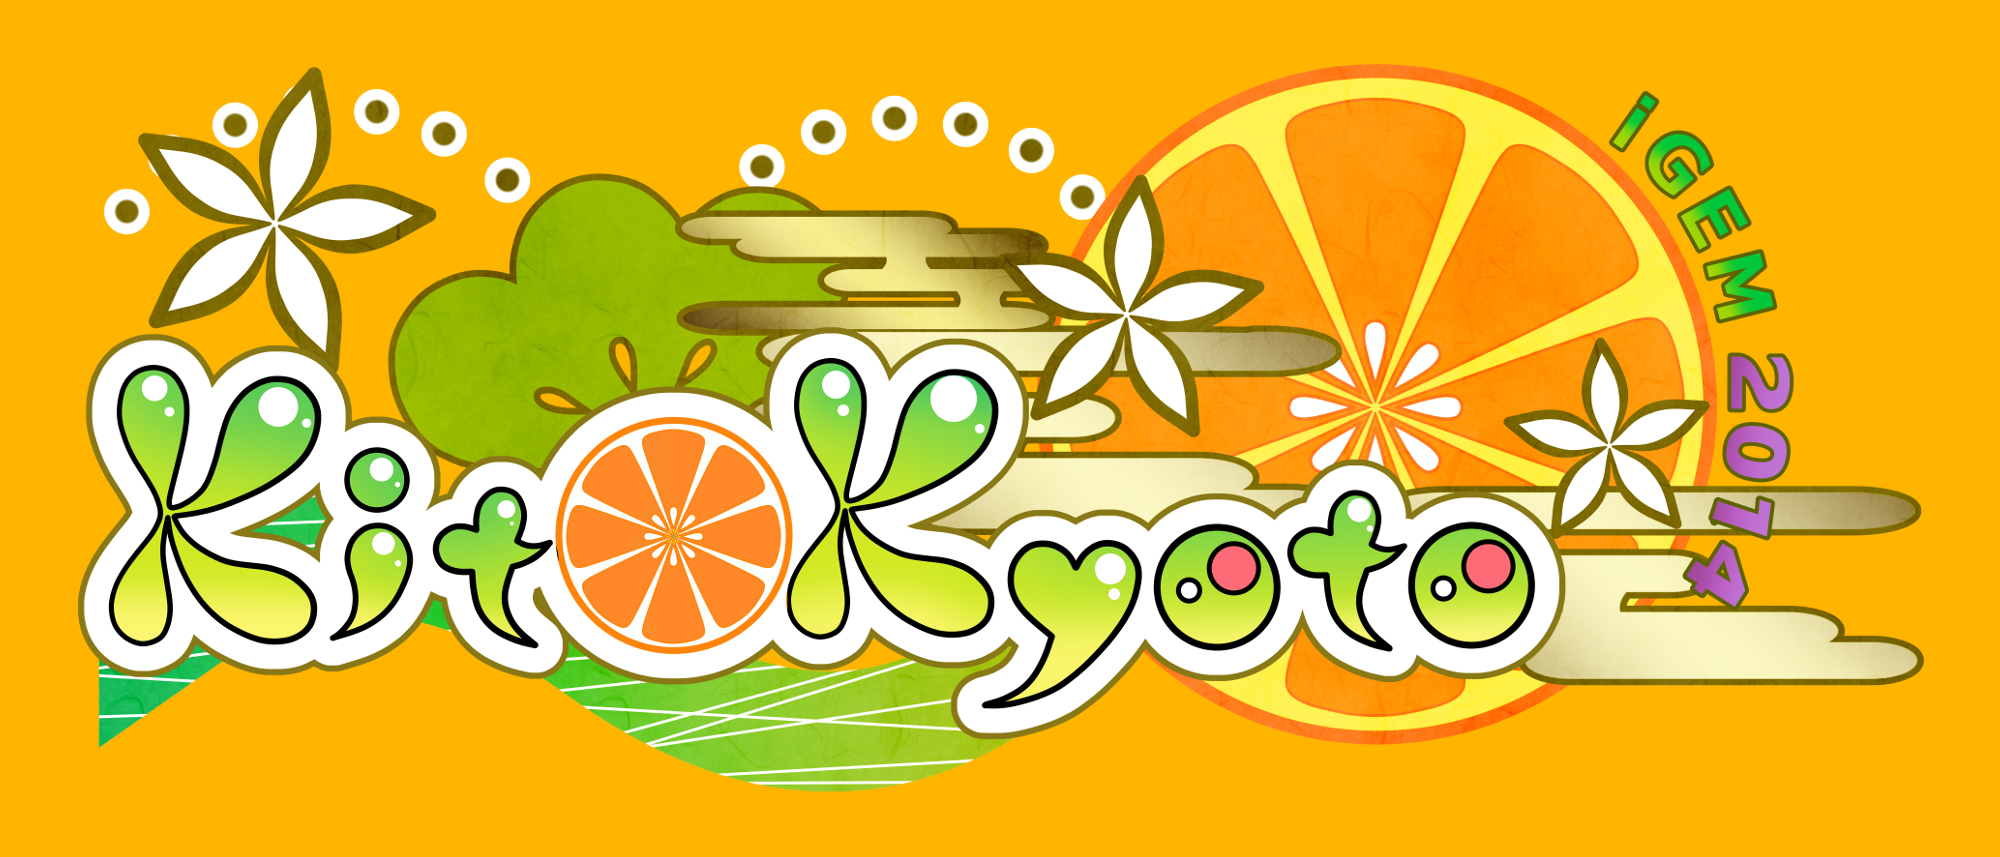 KIT-kyoto Logo COLOR.jpg